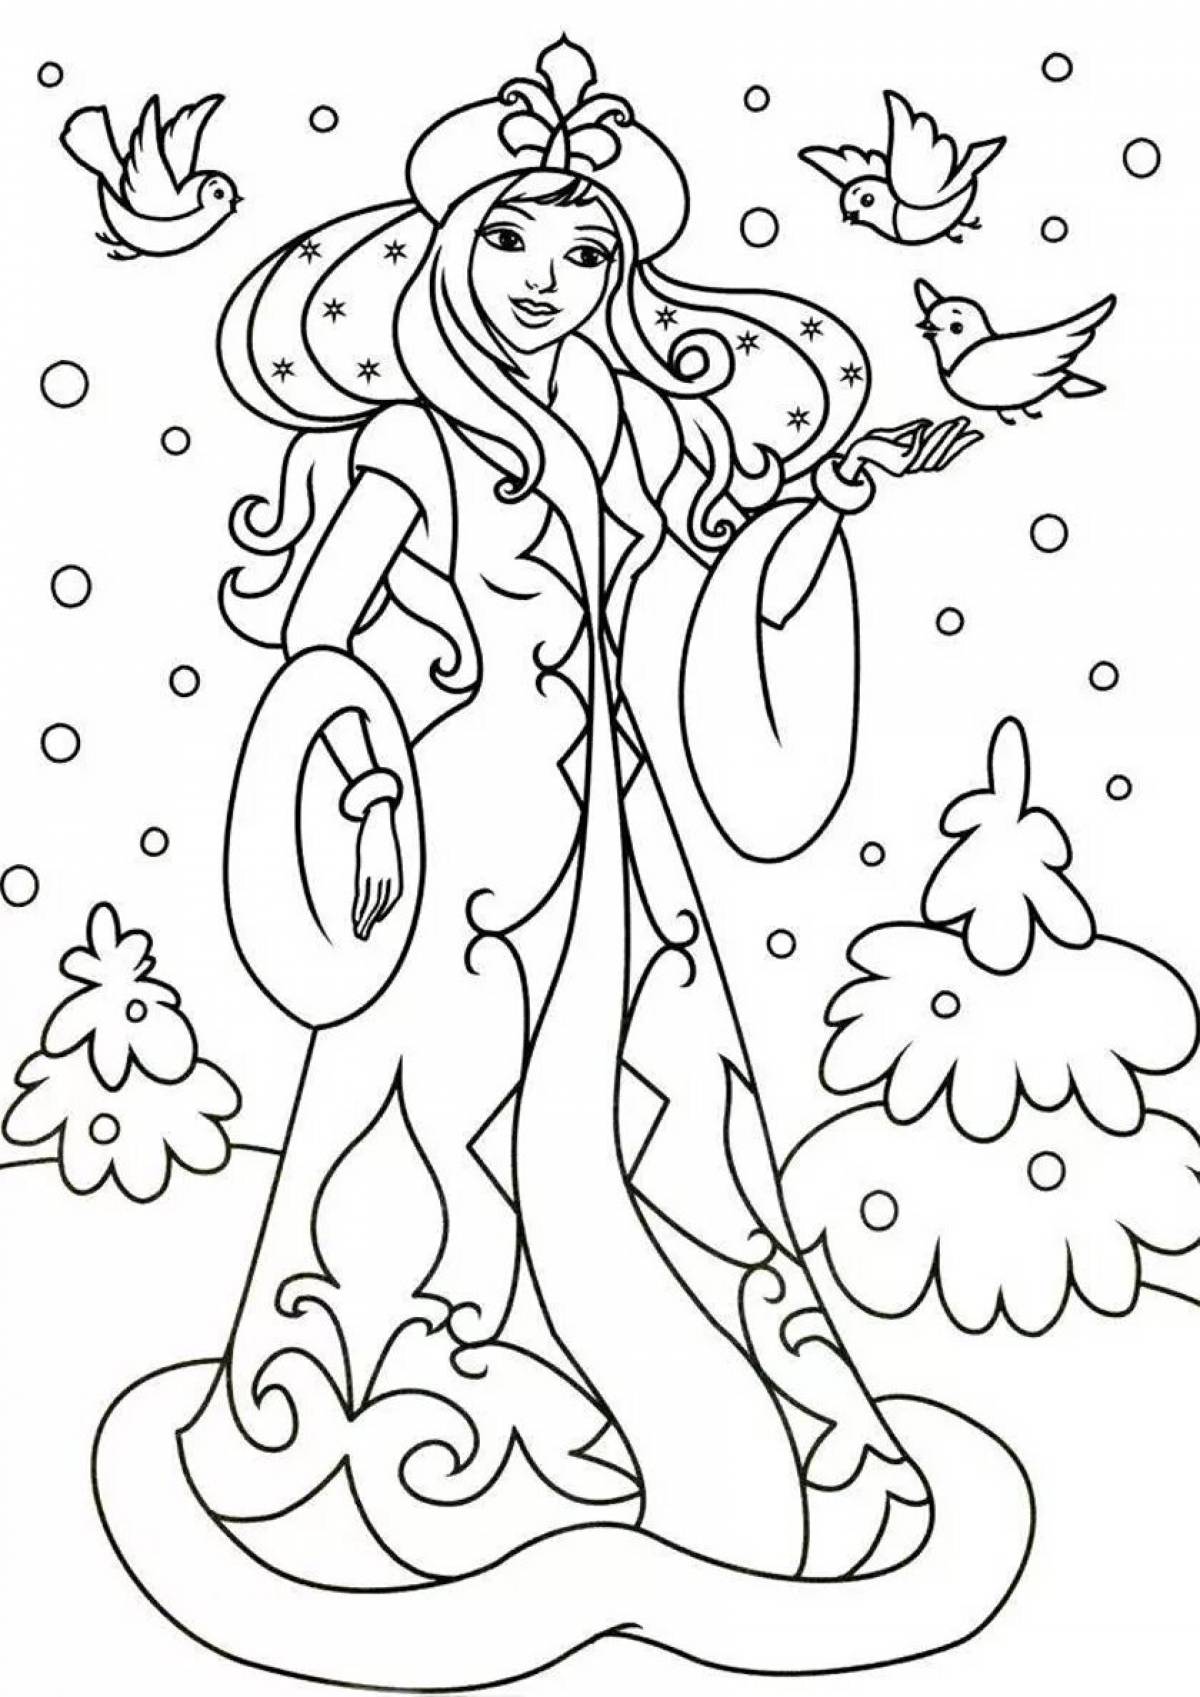 Coloring snow maiden rim korsakov